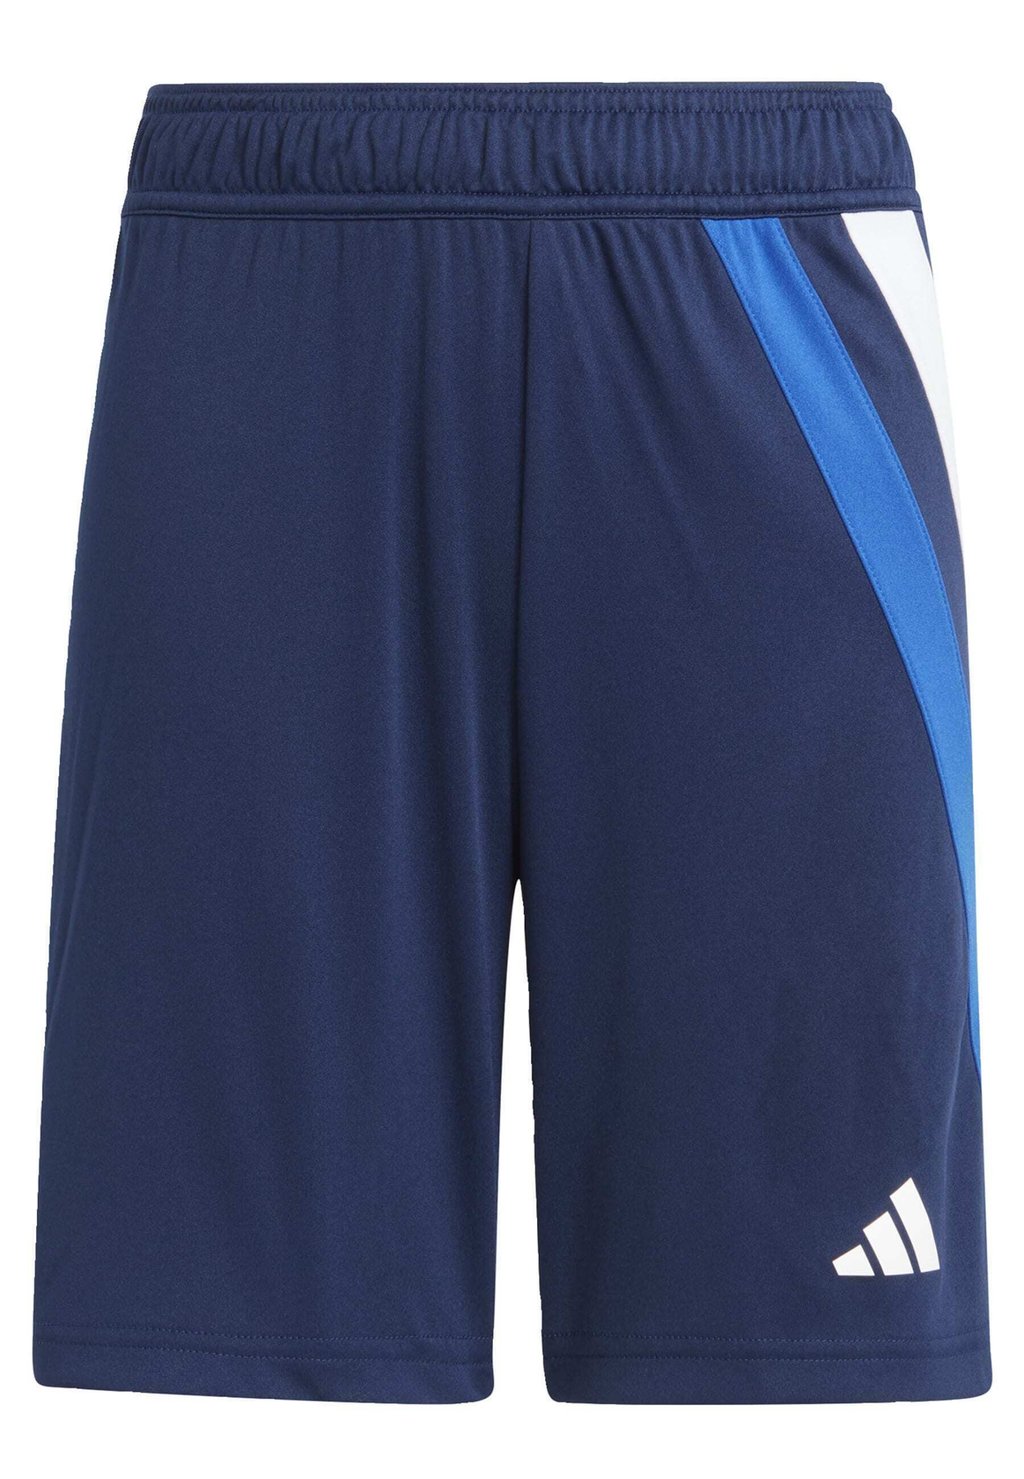 Спортивные шорты Fortore 23 Adidas, цвет team navy blue royal blue white team collegiate red беговел tech team milano 2 0 blue 2000035770020